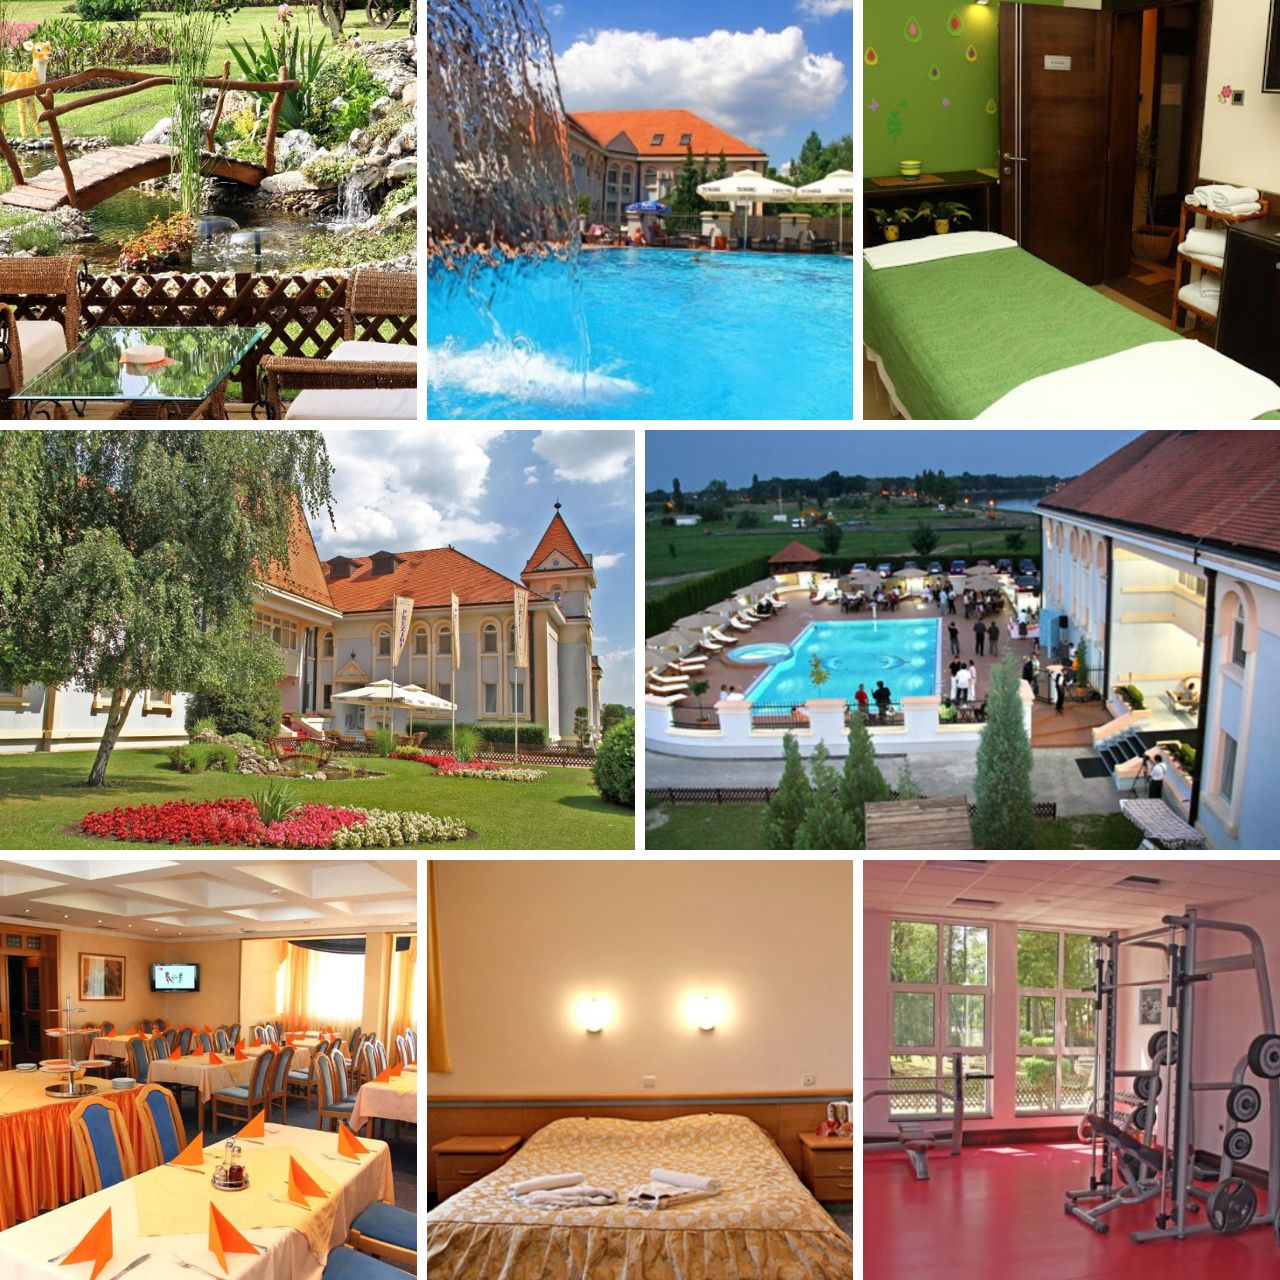 U hotelu 'Prezident' na Paliću, Srbija, vi dobijate raznovresnu ponudu: udobne sobe, ljubazno osoblje, zatvoren bazen, otvoren bazen, teretana, spa centar, okruženje lepo uređenog parka uz Palićko jezero.